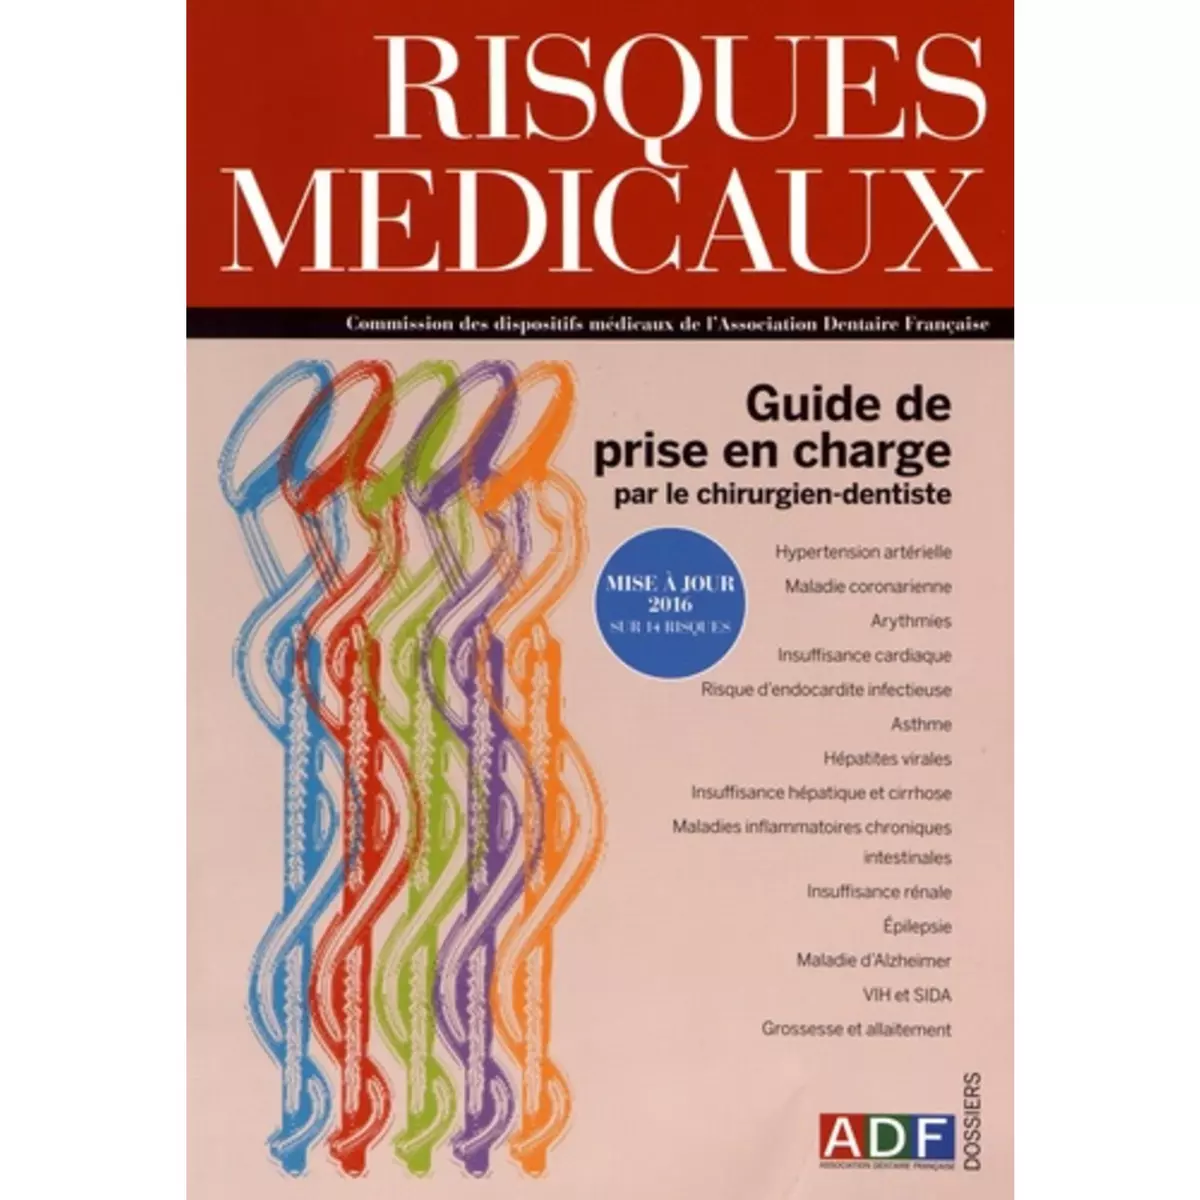  RISQUES MEDICAUX. GUIDE DE PRISE EN CHARGE PAR LE CHIRURGIEN-DENTISTE : MISE A JOUR 2016 SUR 14 RISQUES, Laurent Florian